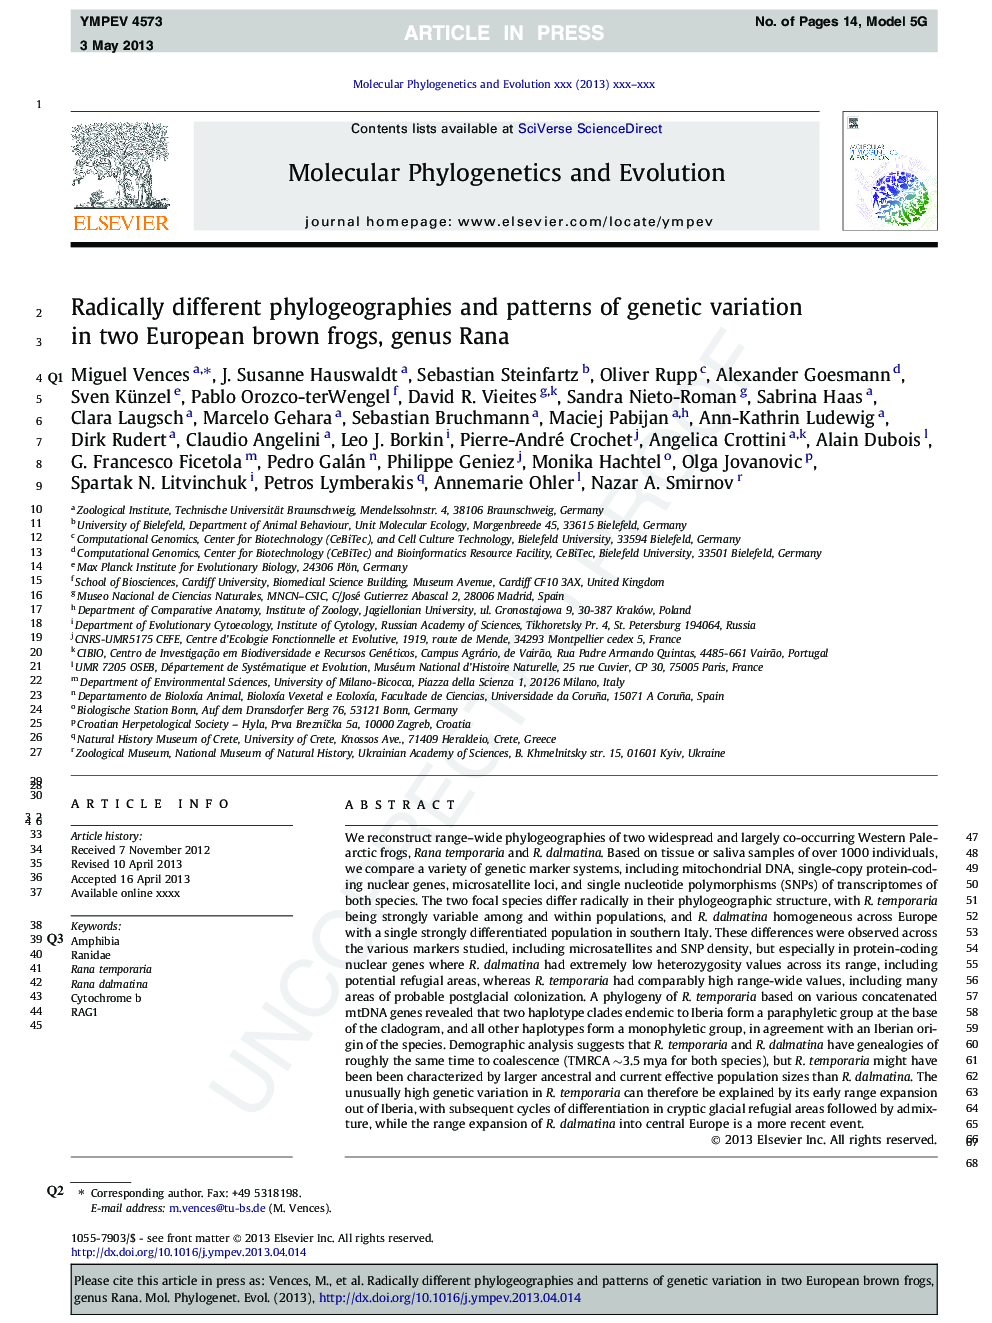 ریشه های مختلف فیلوژوگرافی و الگوهای تنوع ژنتیکی در قورباغه اروپایی، جنس رانا 